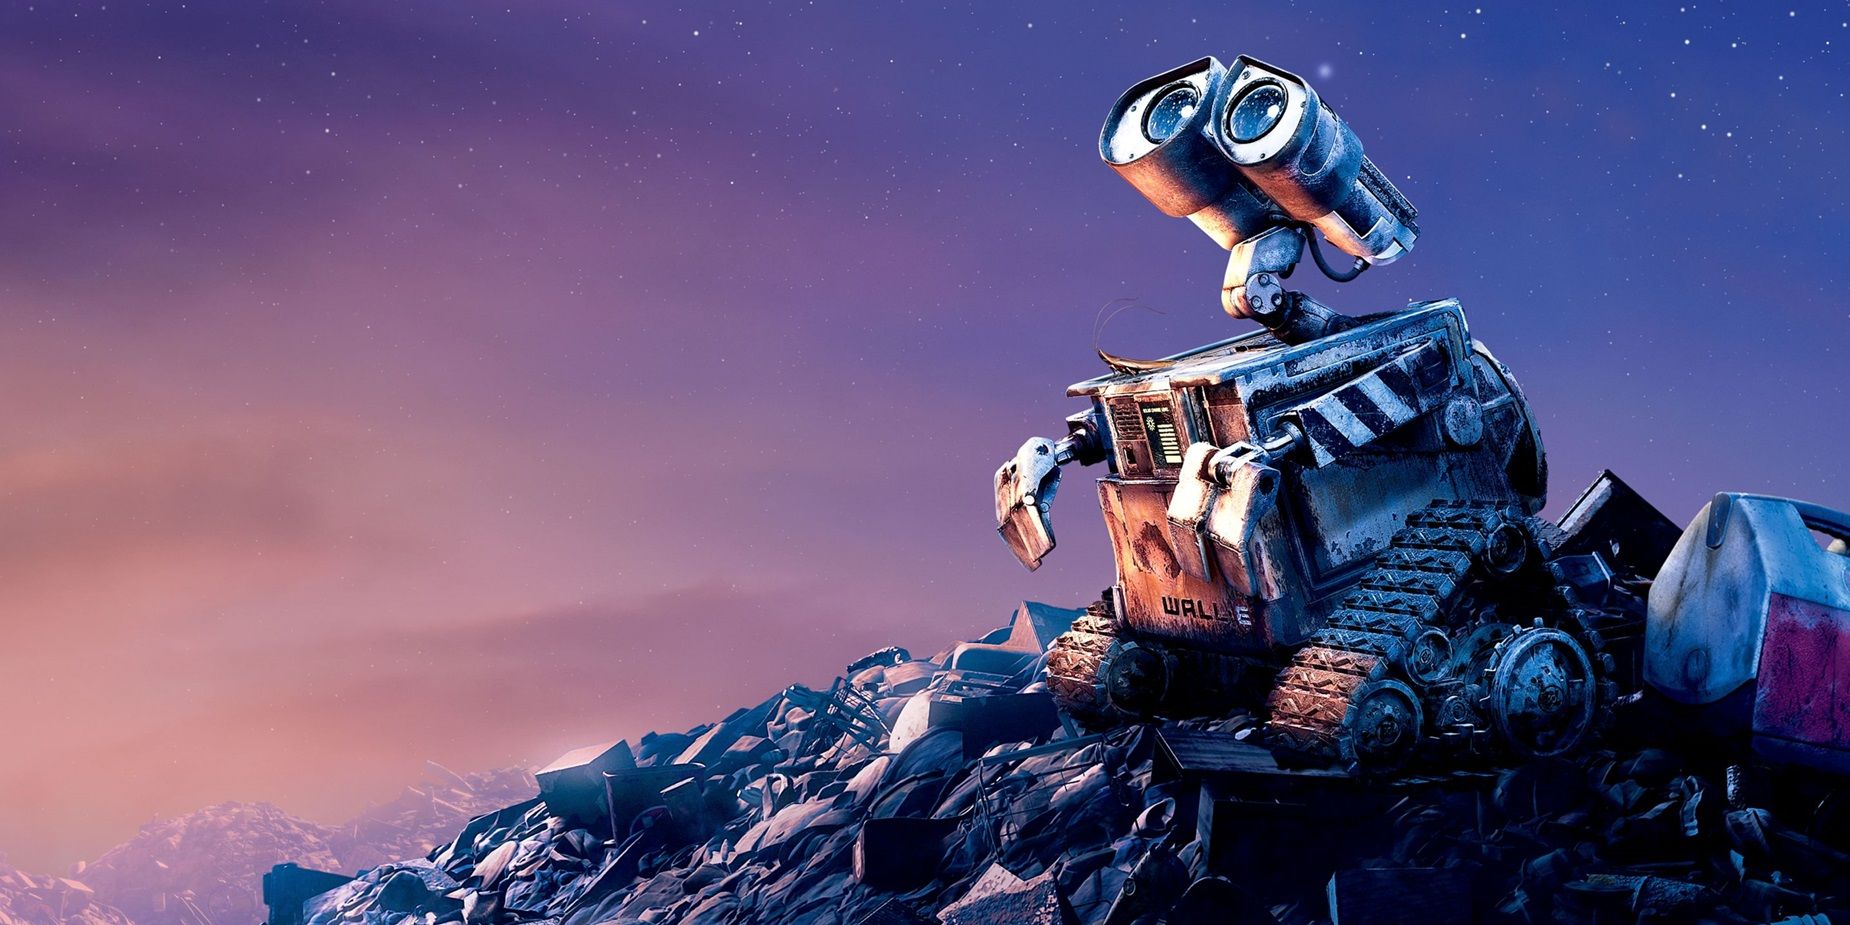 WALL-E olhando para as estrelas